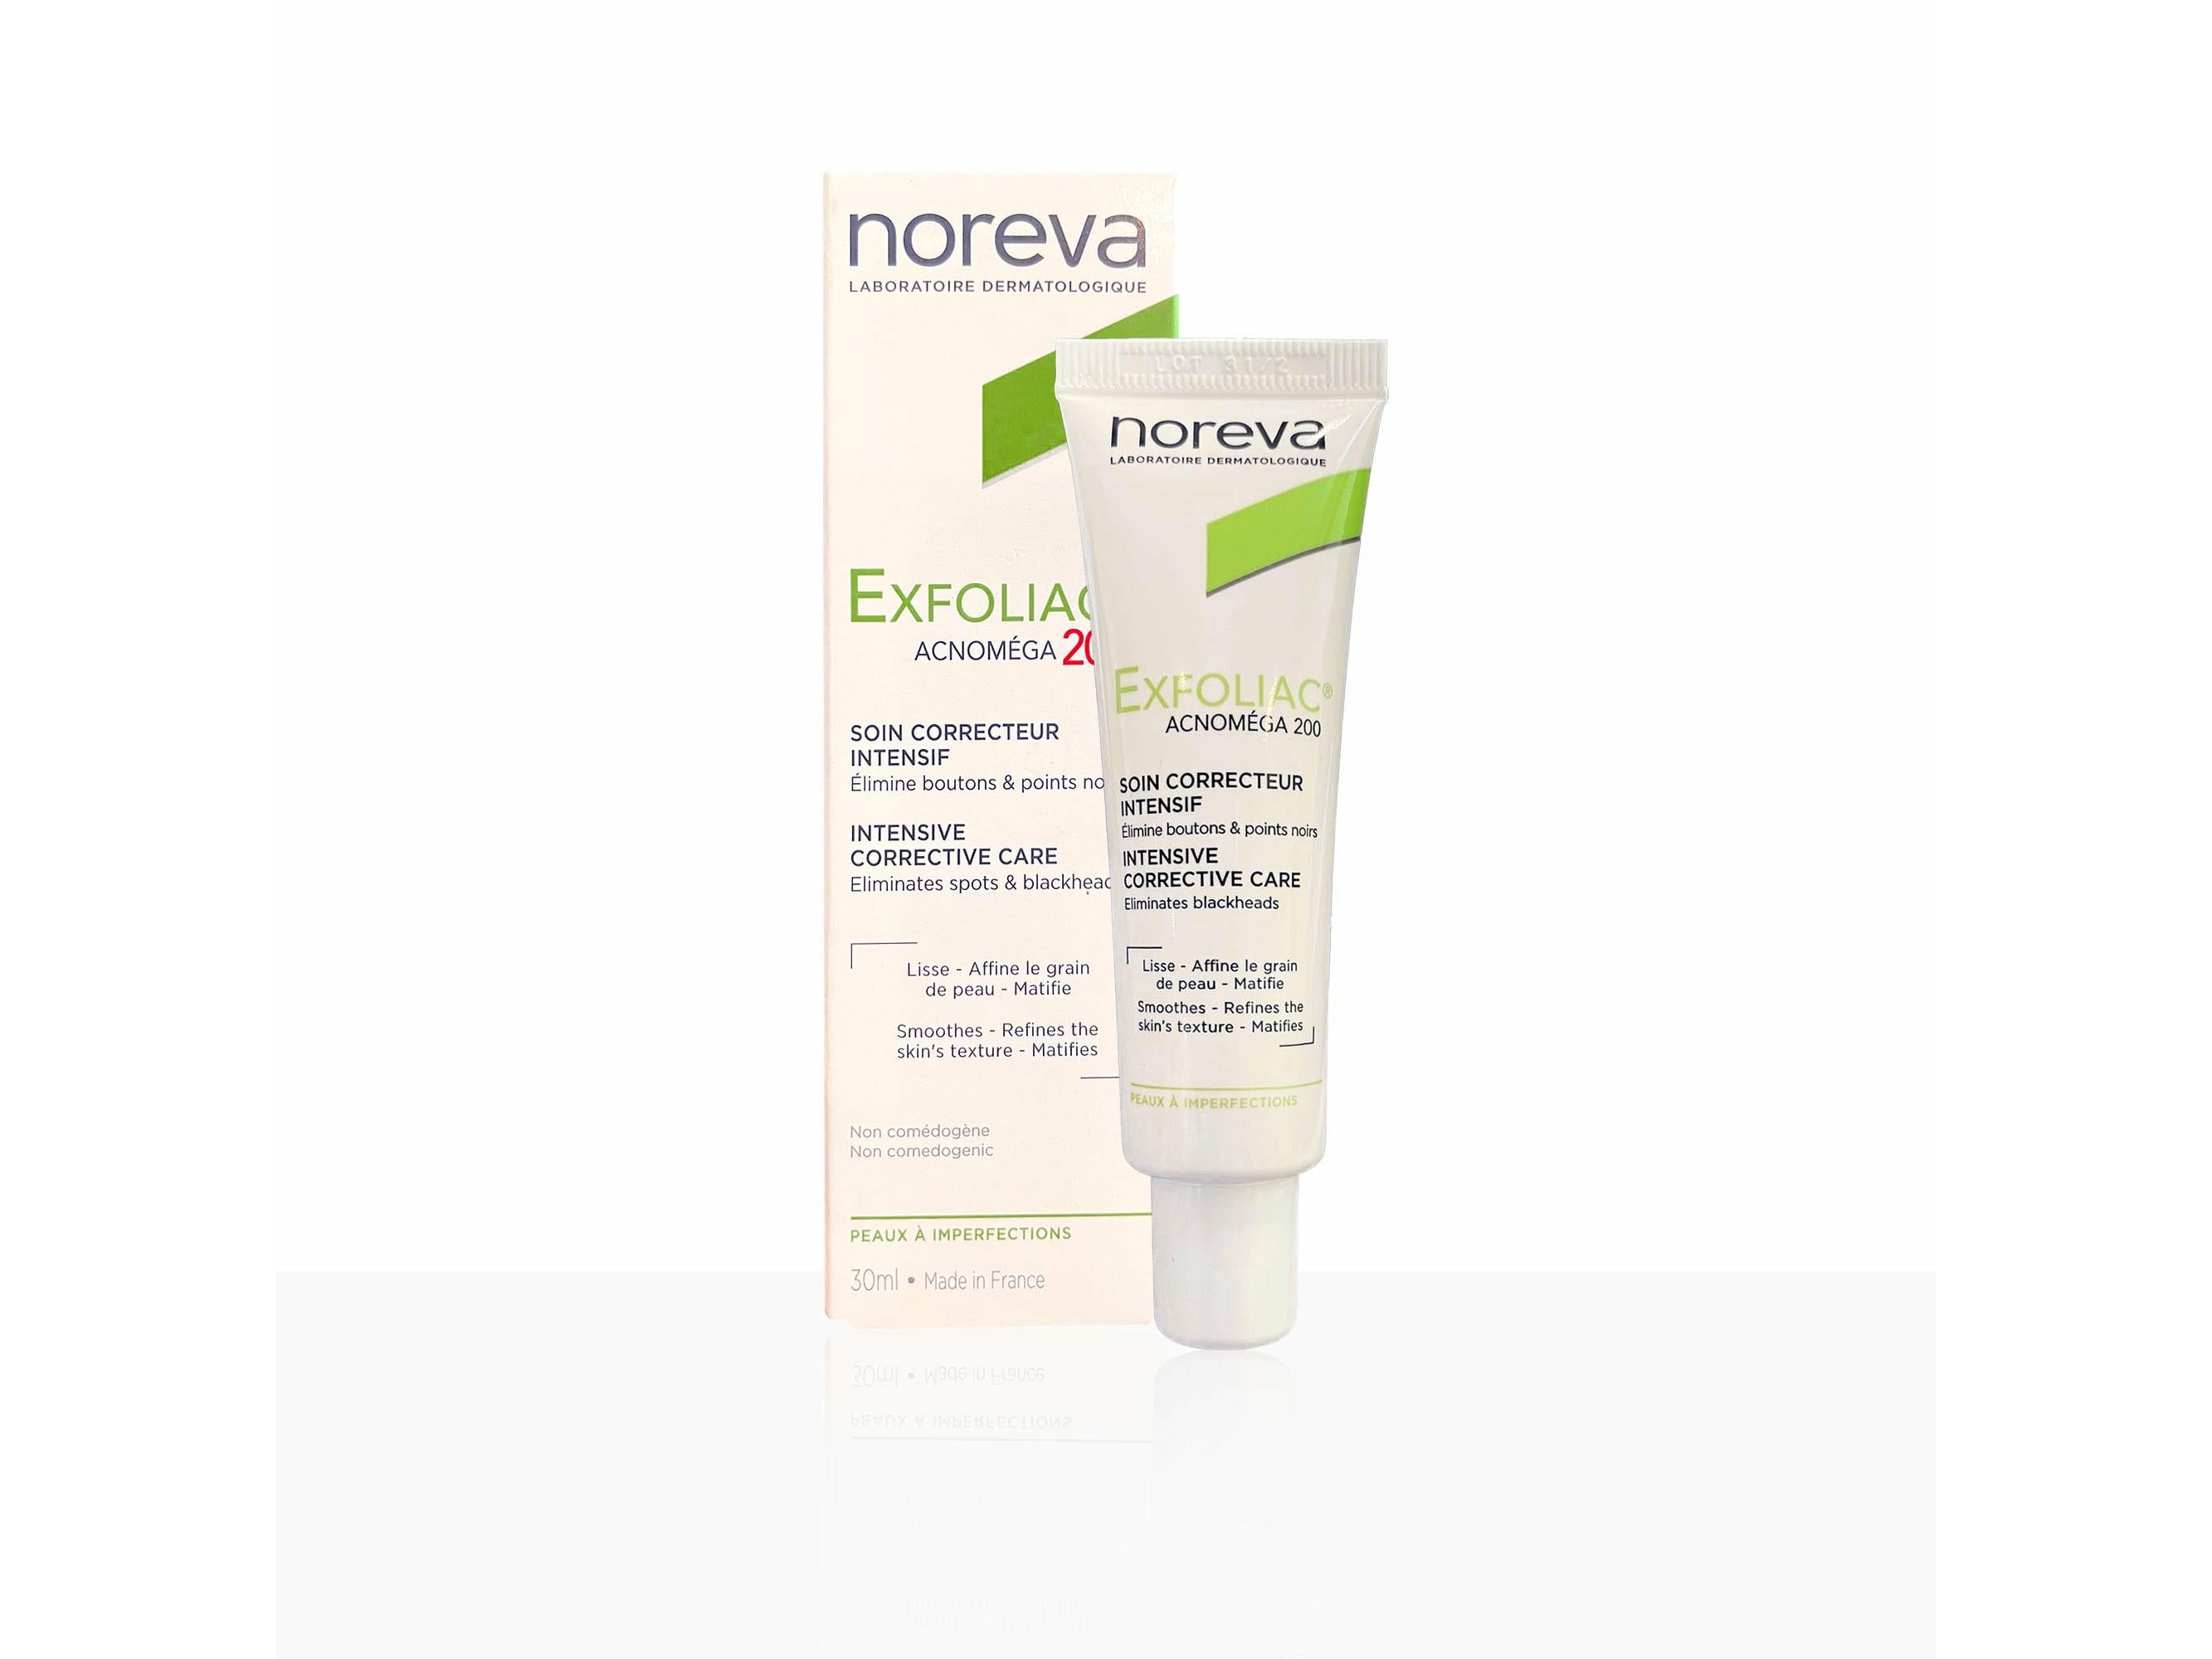 Noreva Exfoliac Acnomega 200 - Clinikally